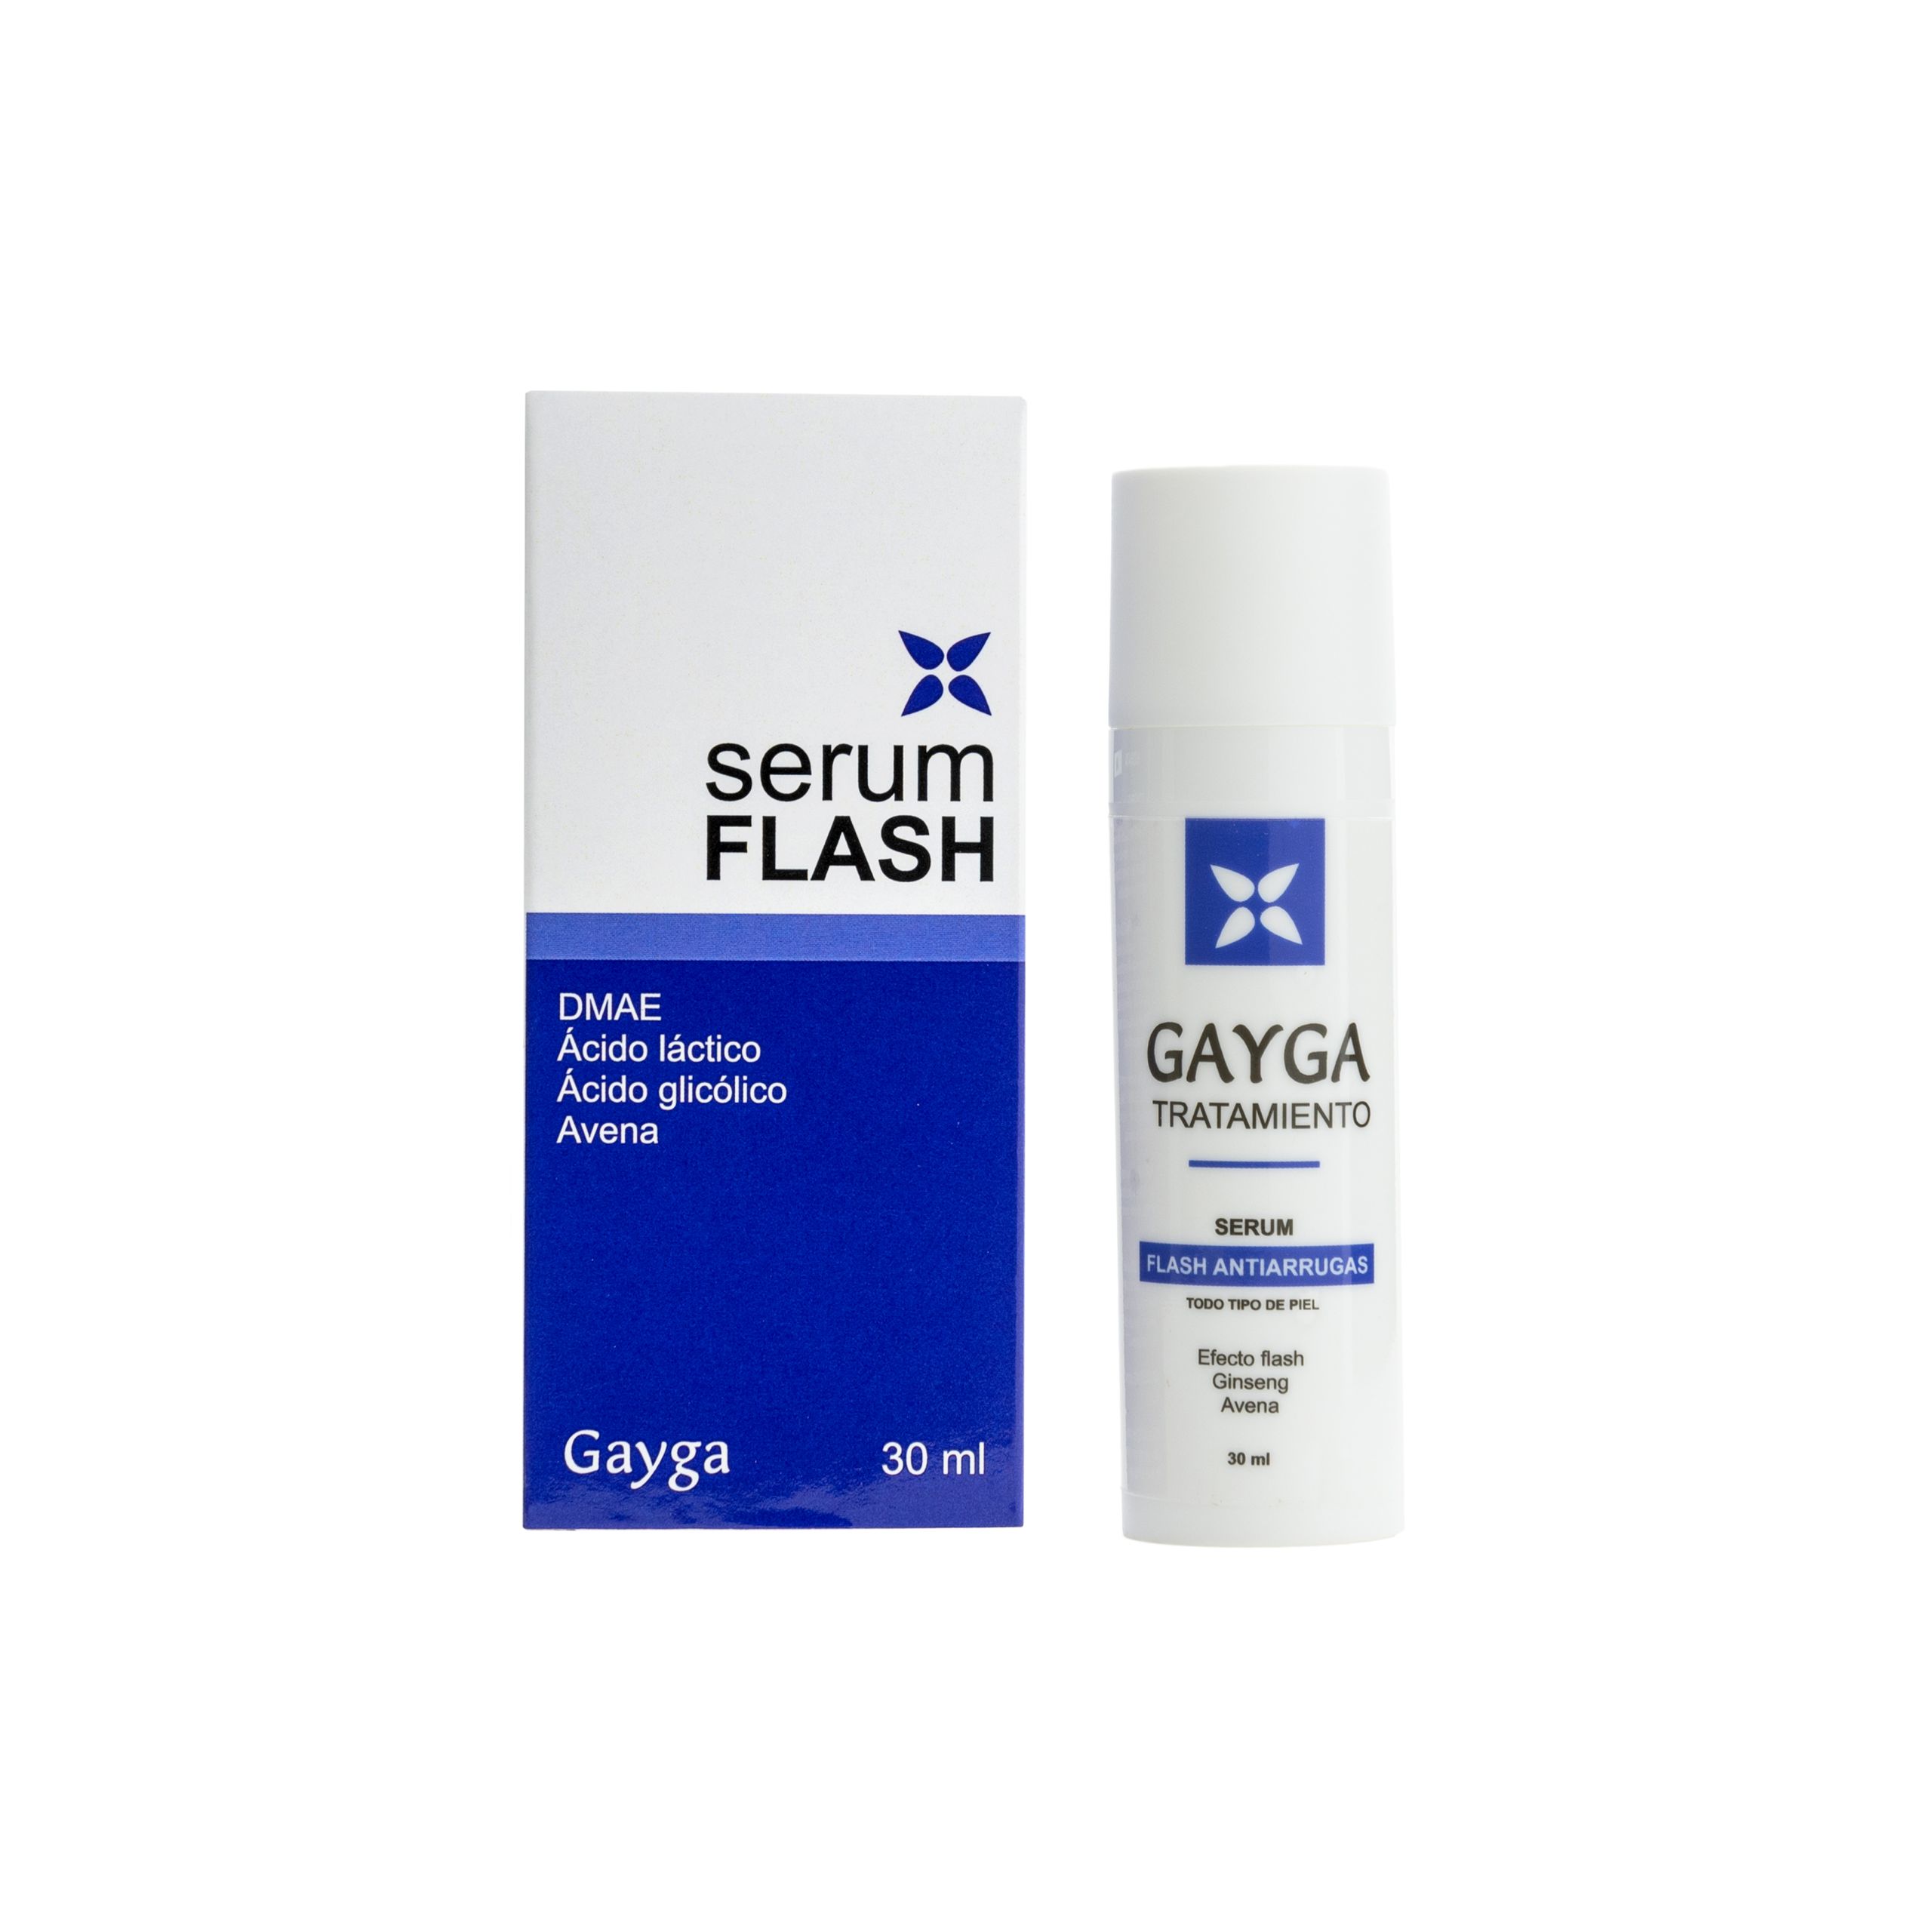 serum-flash-antiarrugas